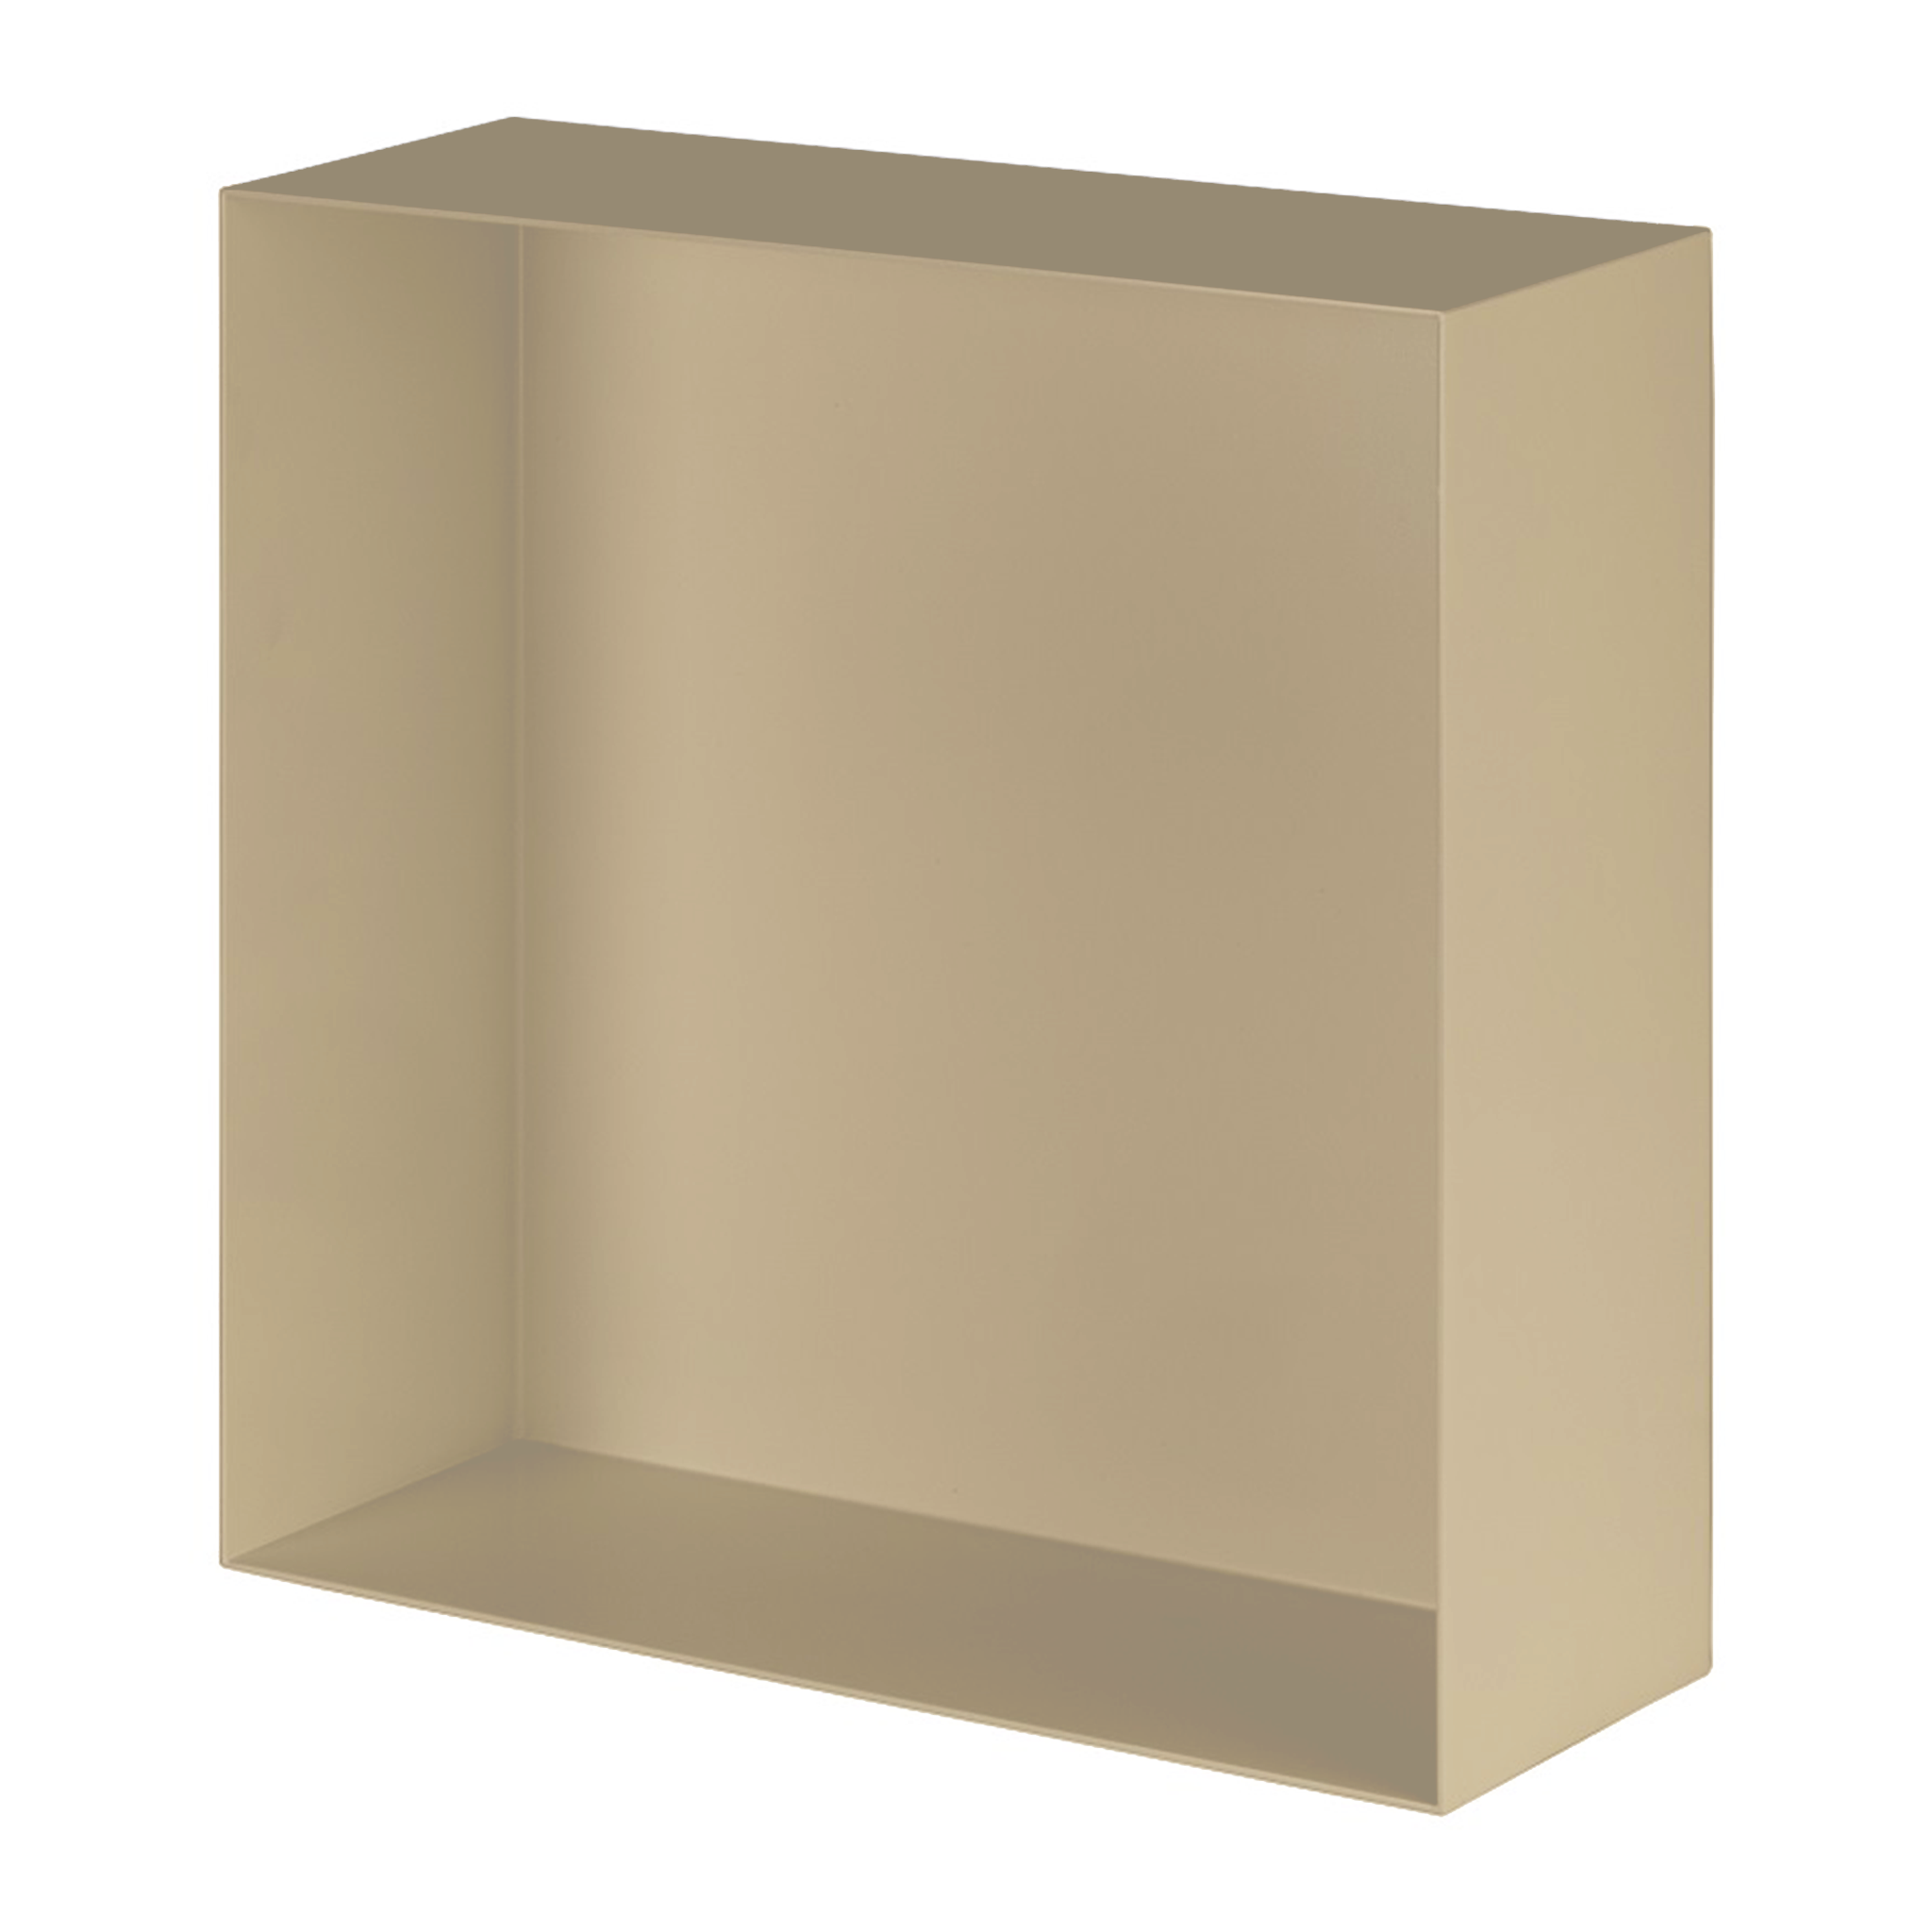 Valli Home – V-Box, Nicchia portaoggetti in Metallo smaltato color Beige KK90, Misura 40X40 P. 10 cm – V-BOX.MLLO.40X40.90